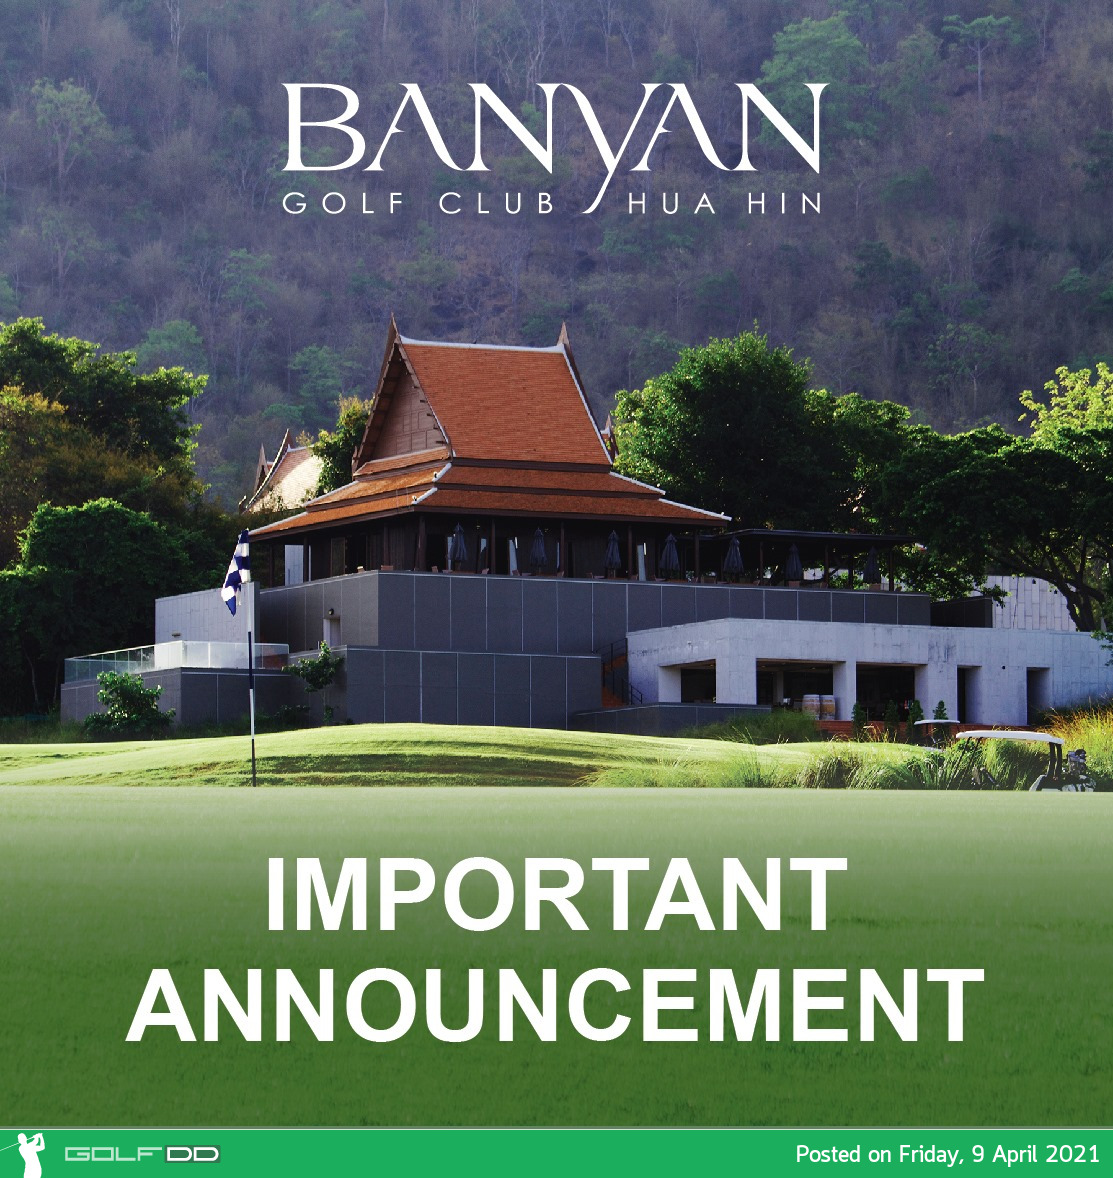 Banyan Golf Hua Hin  ประการ ปิดทำความสะอาด และกลับมาให้บริการใหม่อีกครั้ง วันอาทิตย์ที่ 11 เมษายน 2564 